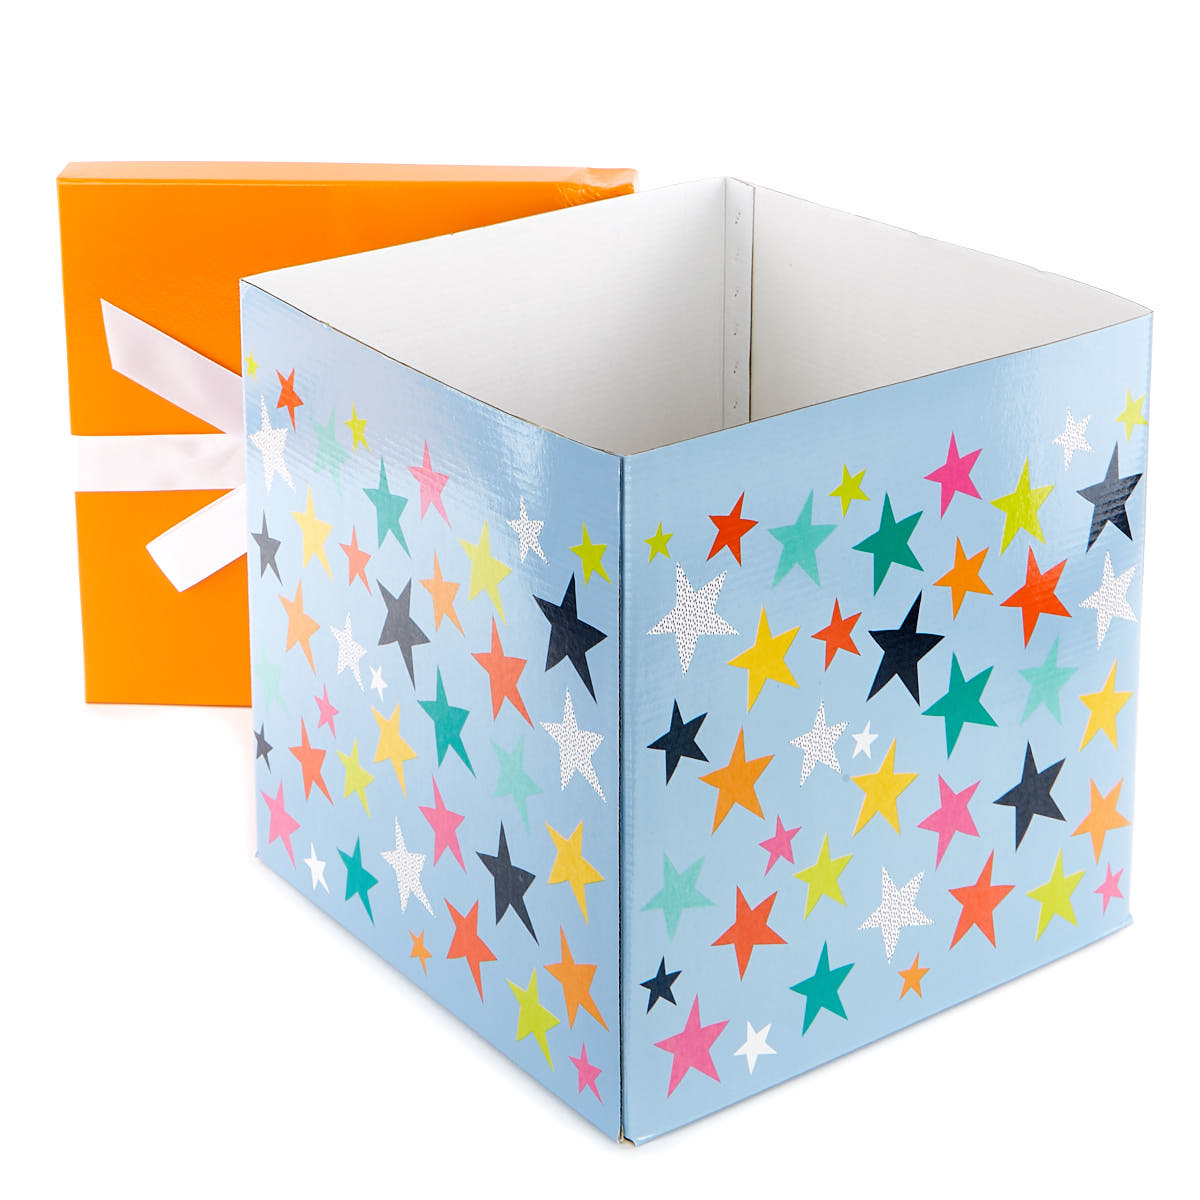 Buy Jumbo FlatPack Gift Box Orange & Blue Stars for GBP